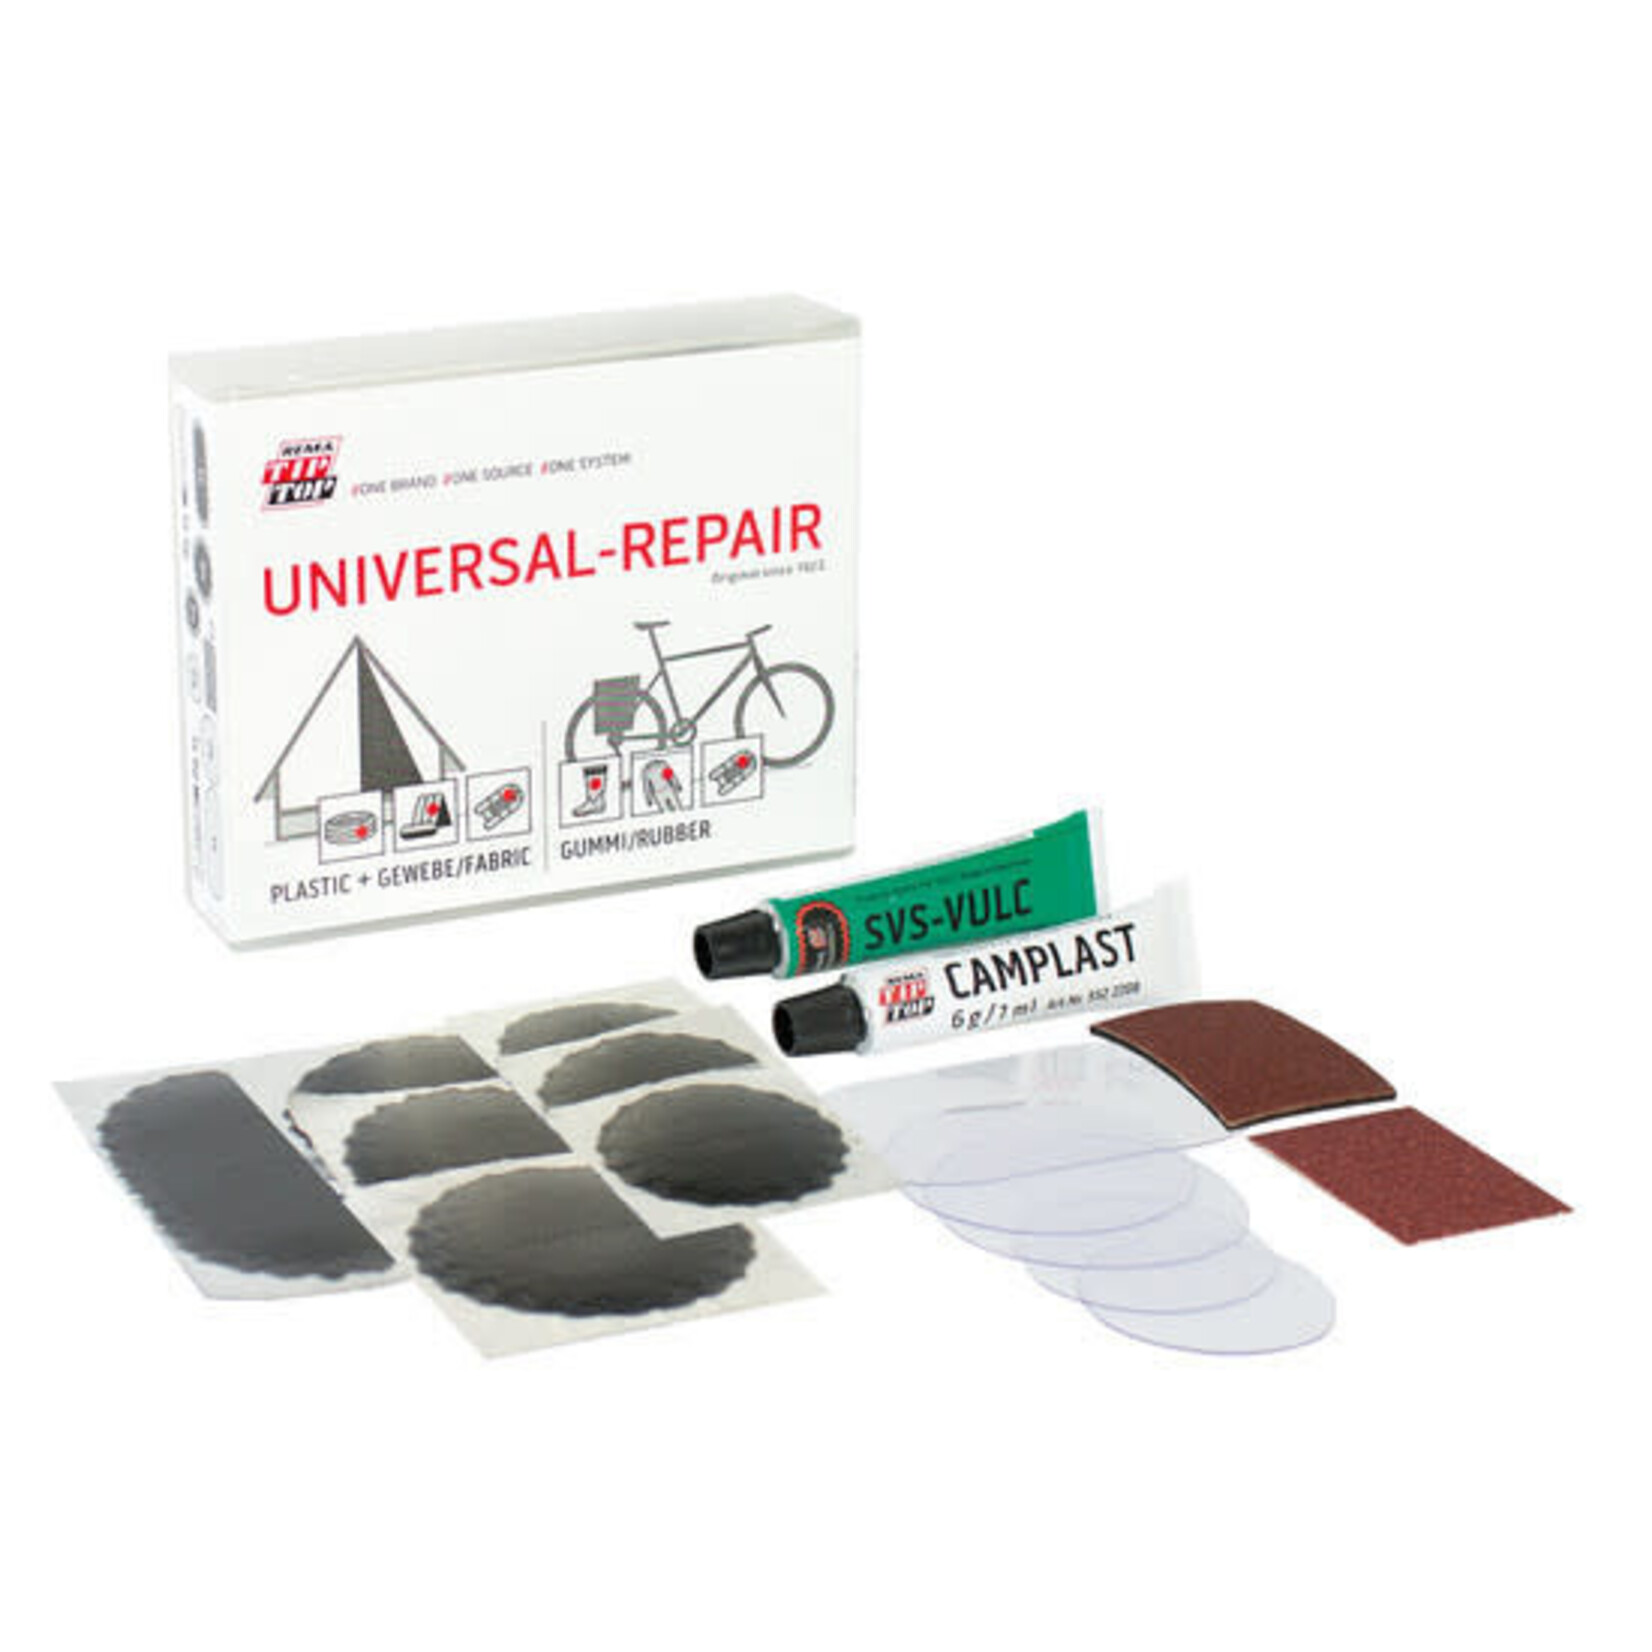 Rema Tip Top Universal Repair kit